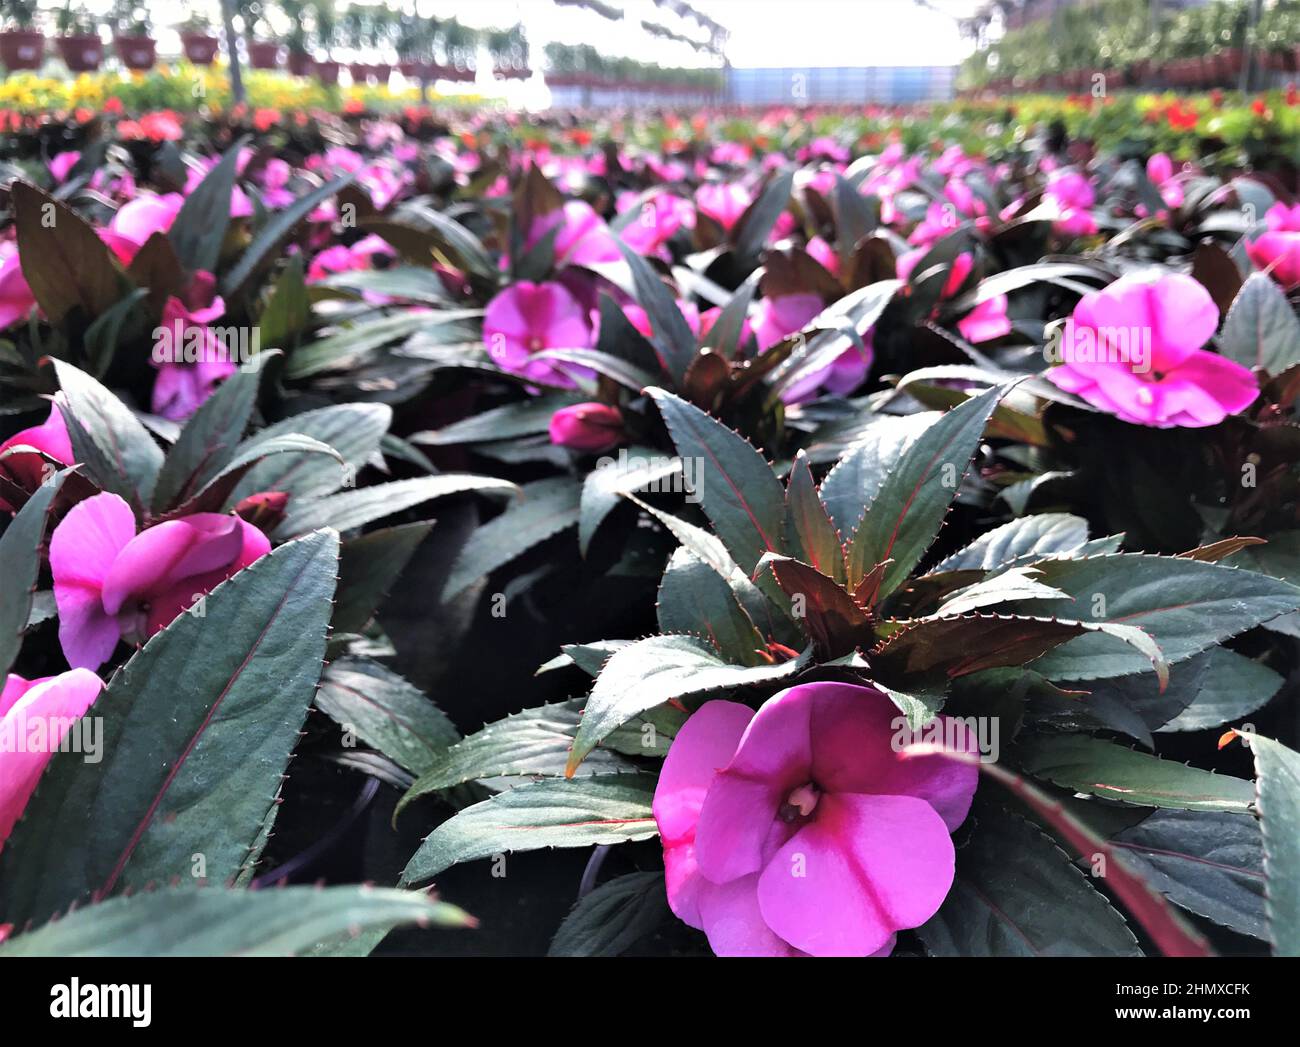 Nahaufnahme von leuchtend rosa balsamischen Blüten mit dunkelgrünen Blättern, die in Töpfen in einem Gewächshaus wachsen. Stockfoto